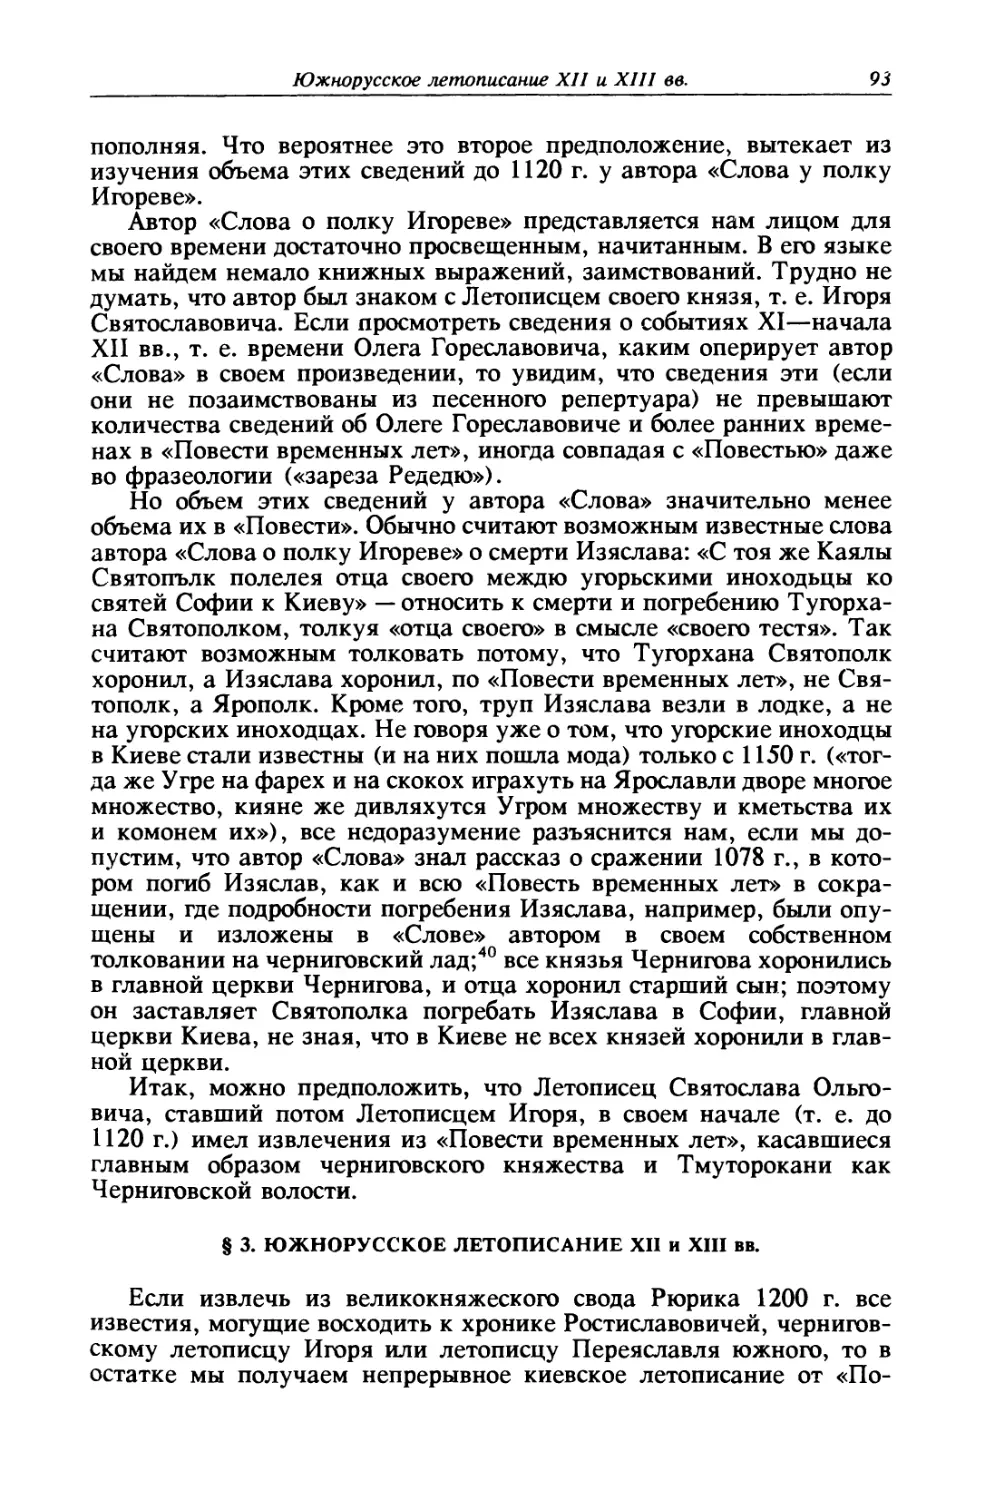 § 3. Южнорусское летописание XII и XIII вв